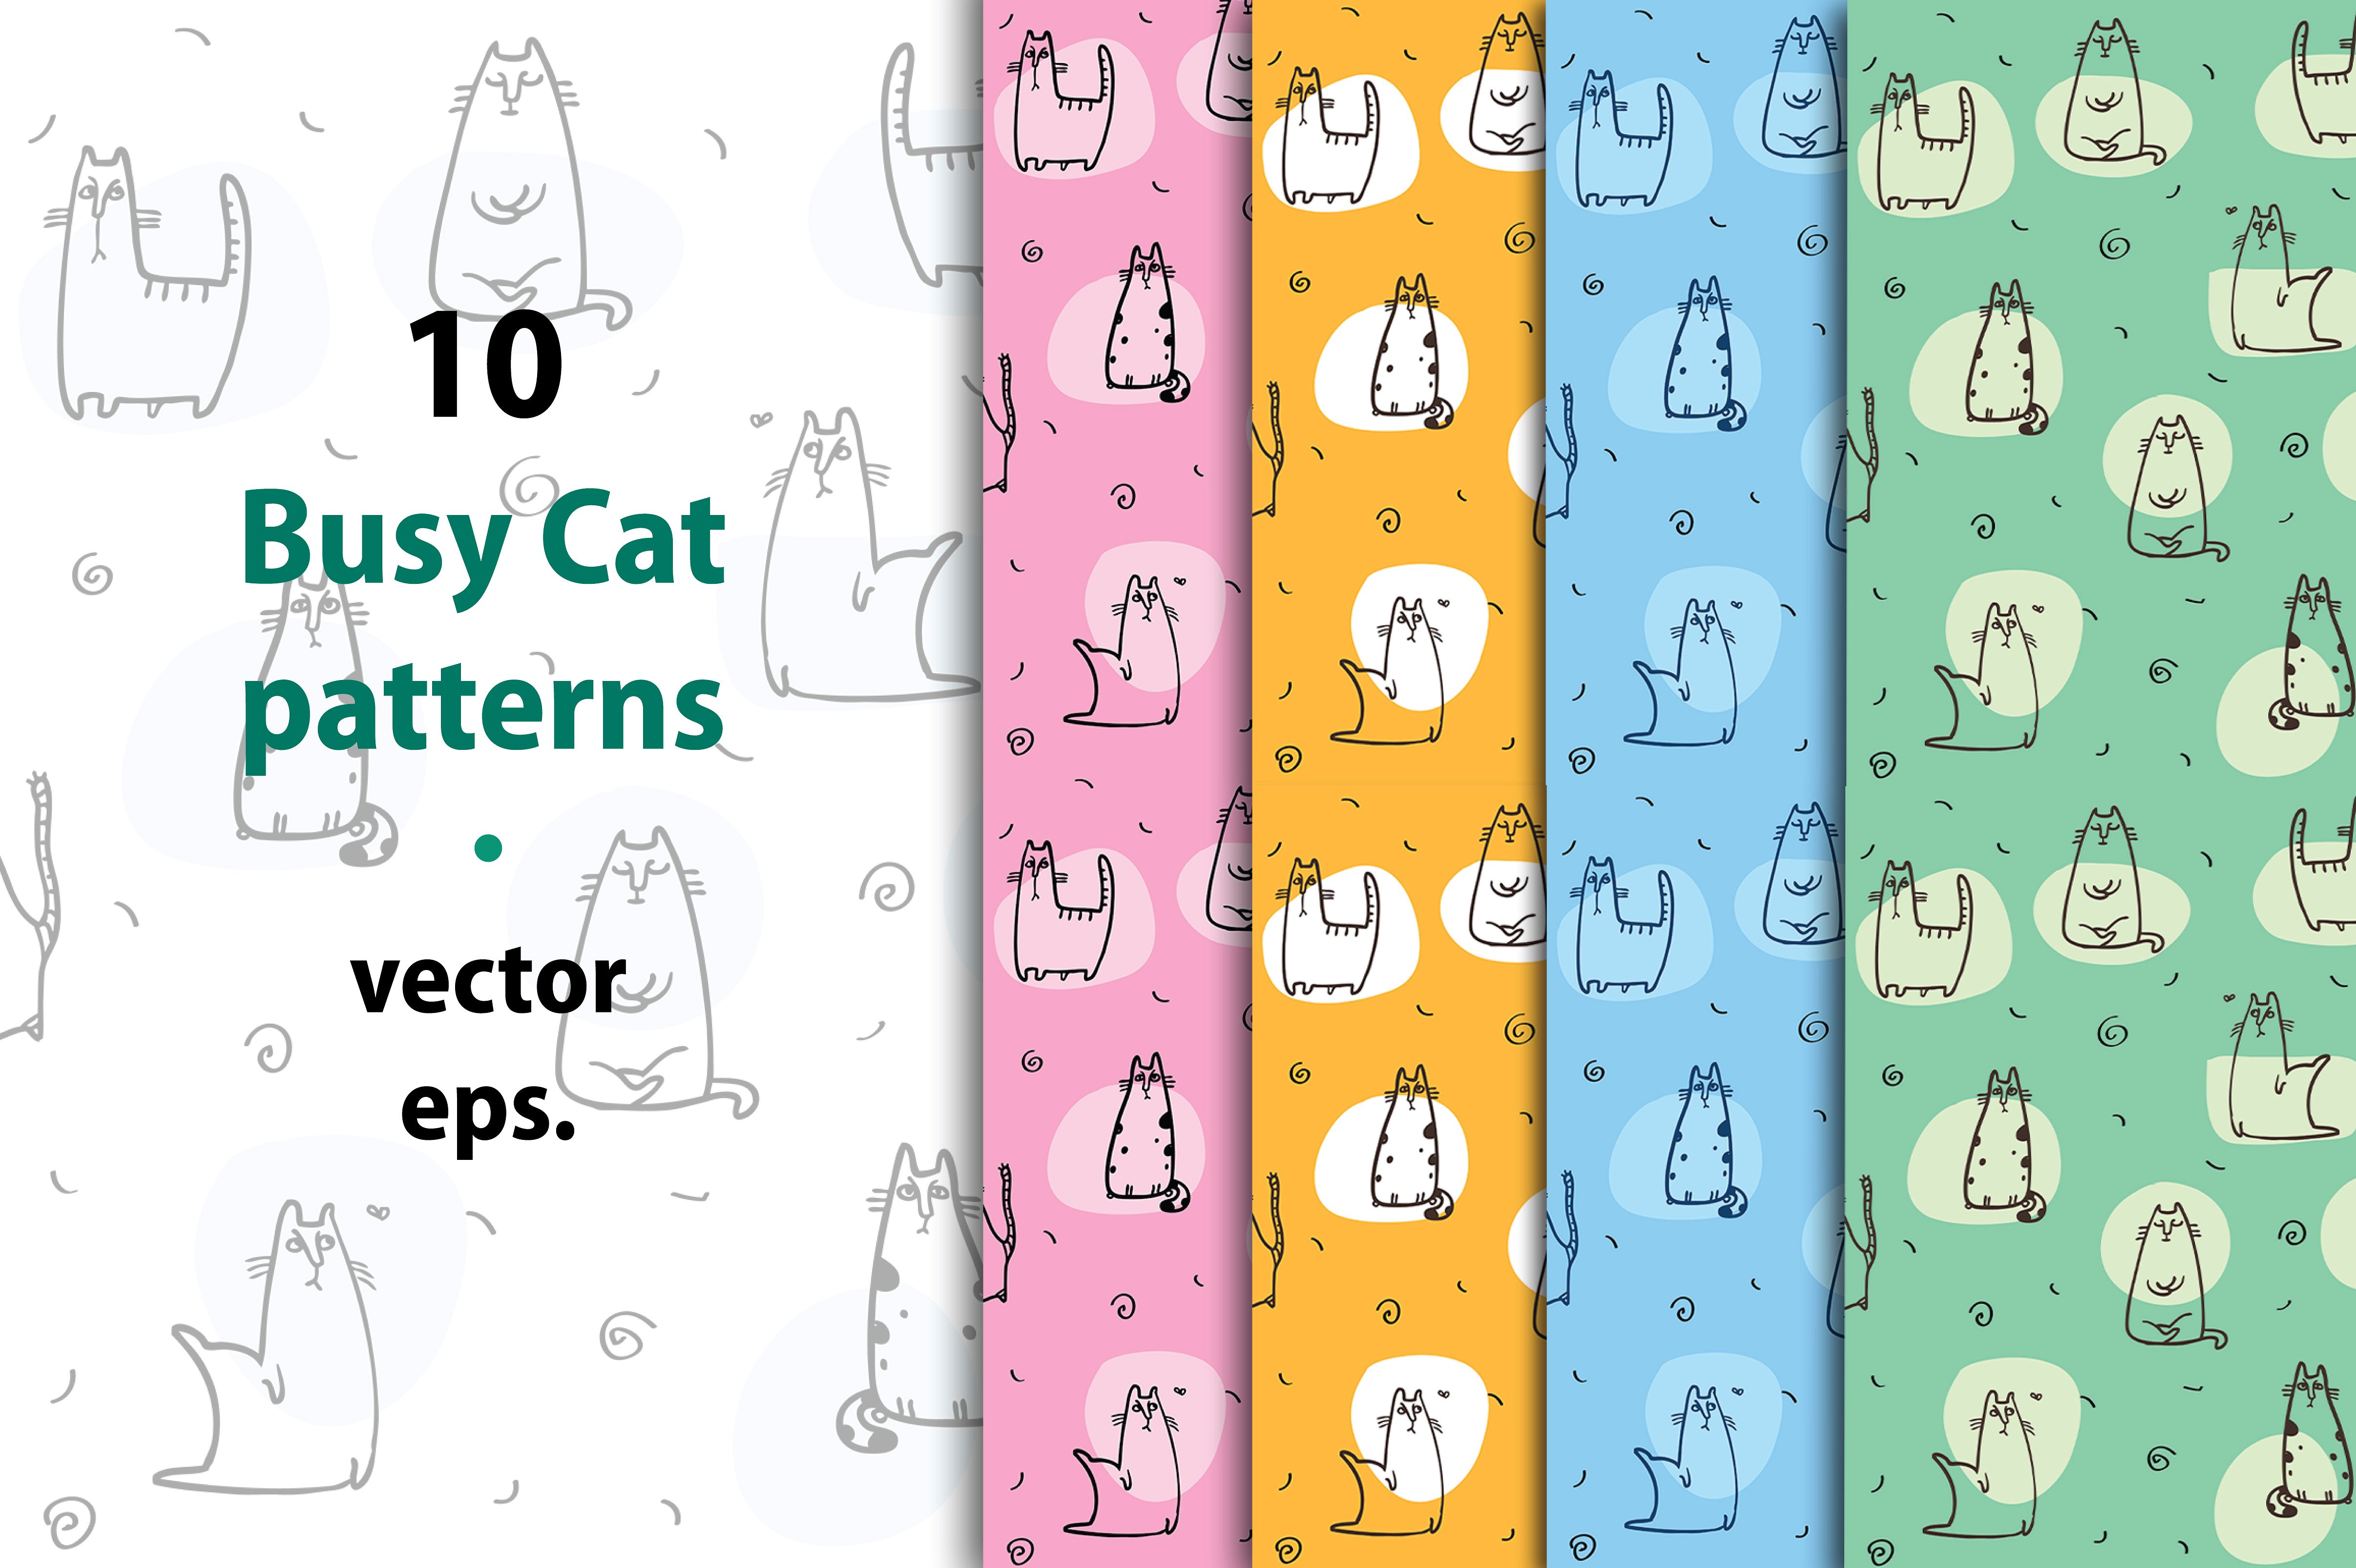 40款严肃的猫收图集 40 Serious Cat Collection Patterns插图6